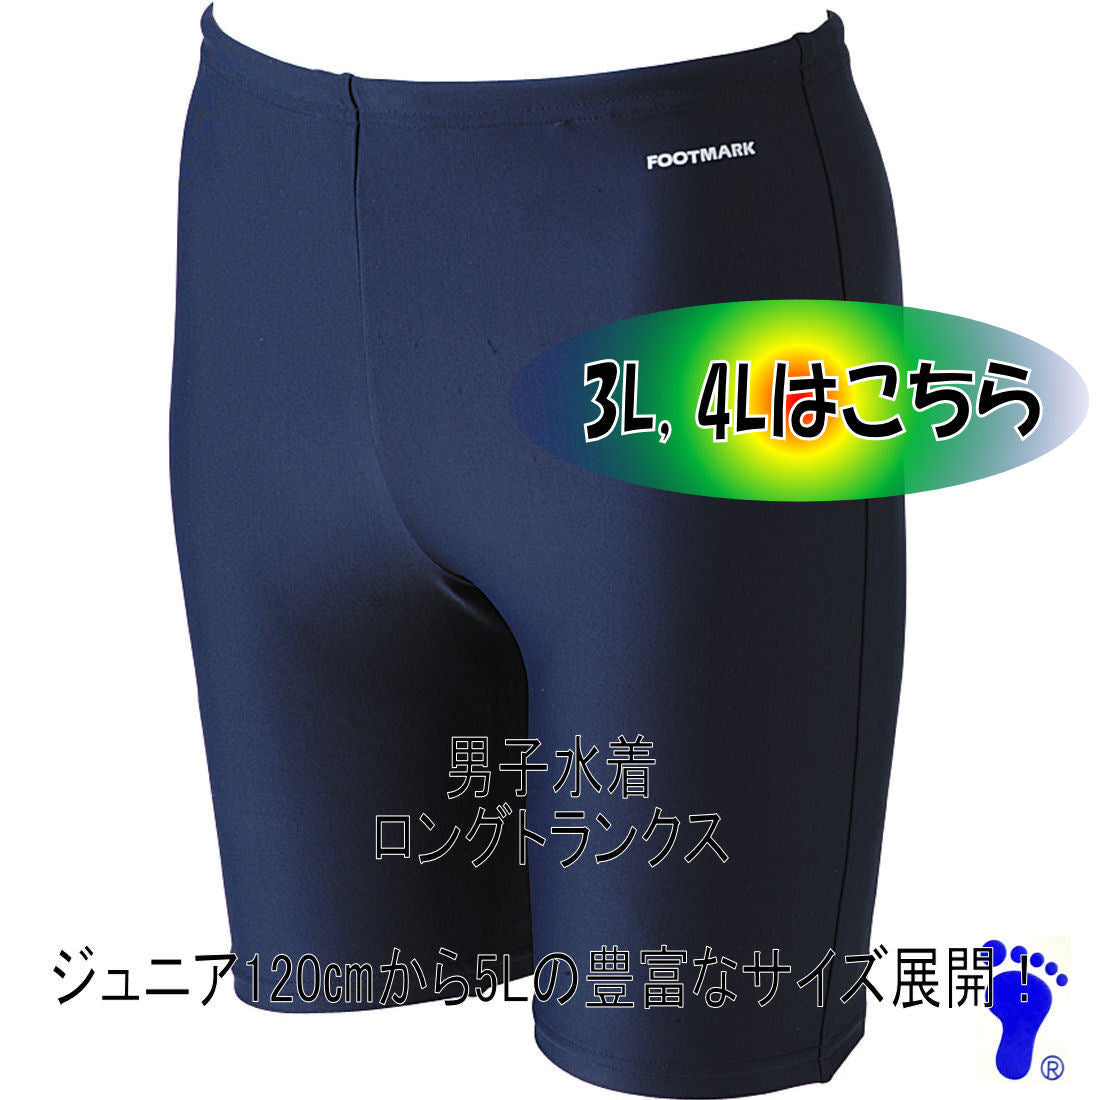 【フットマーク】ロングトランクス 3L・4Lサイズ ネイビー 紺 競泳型 男子男児用